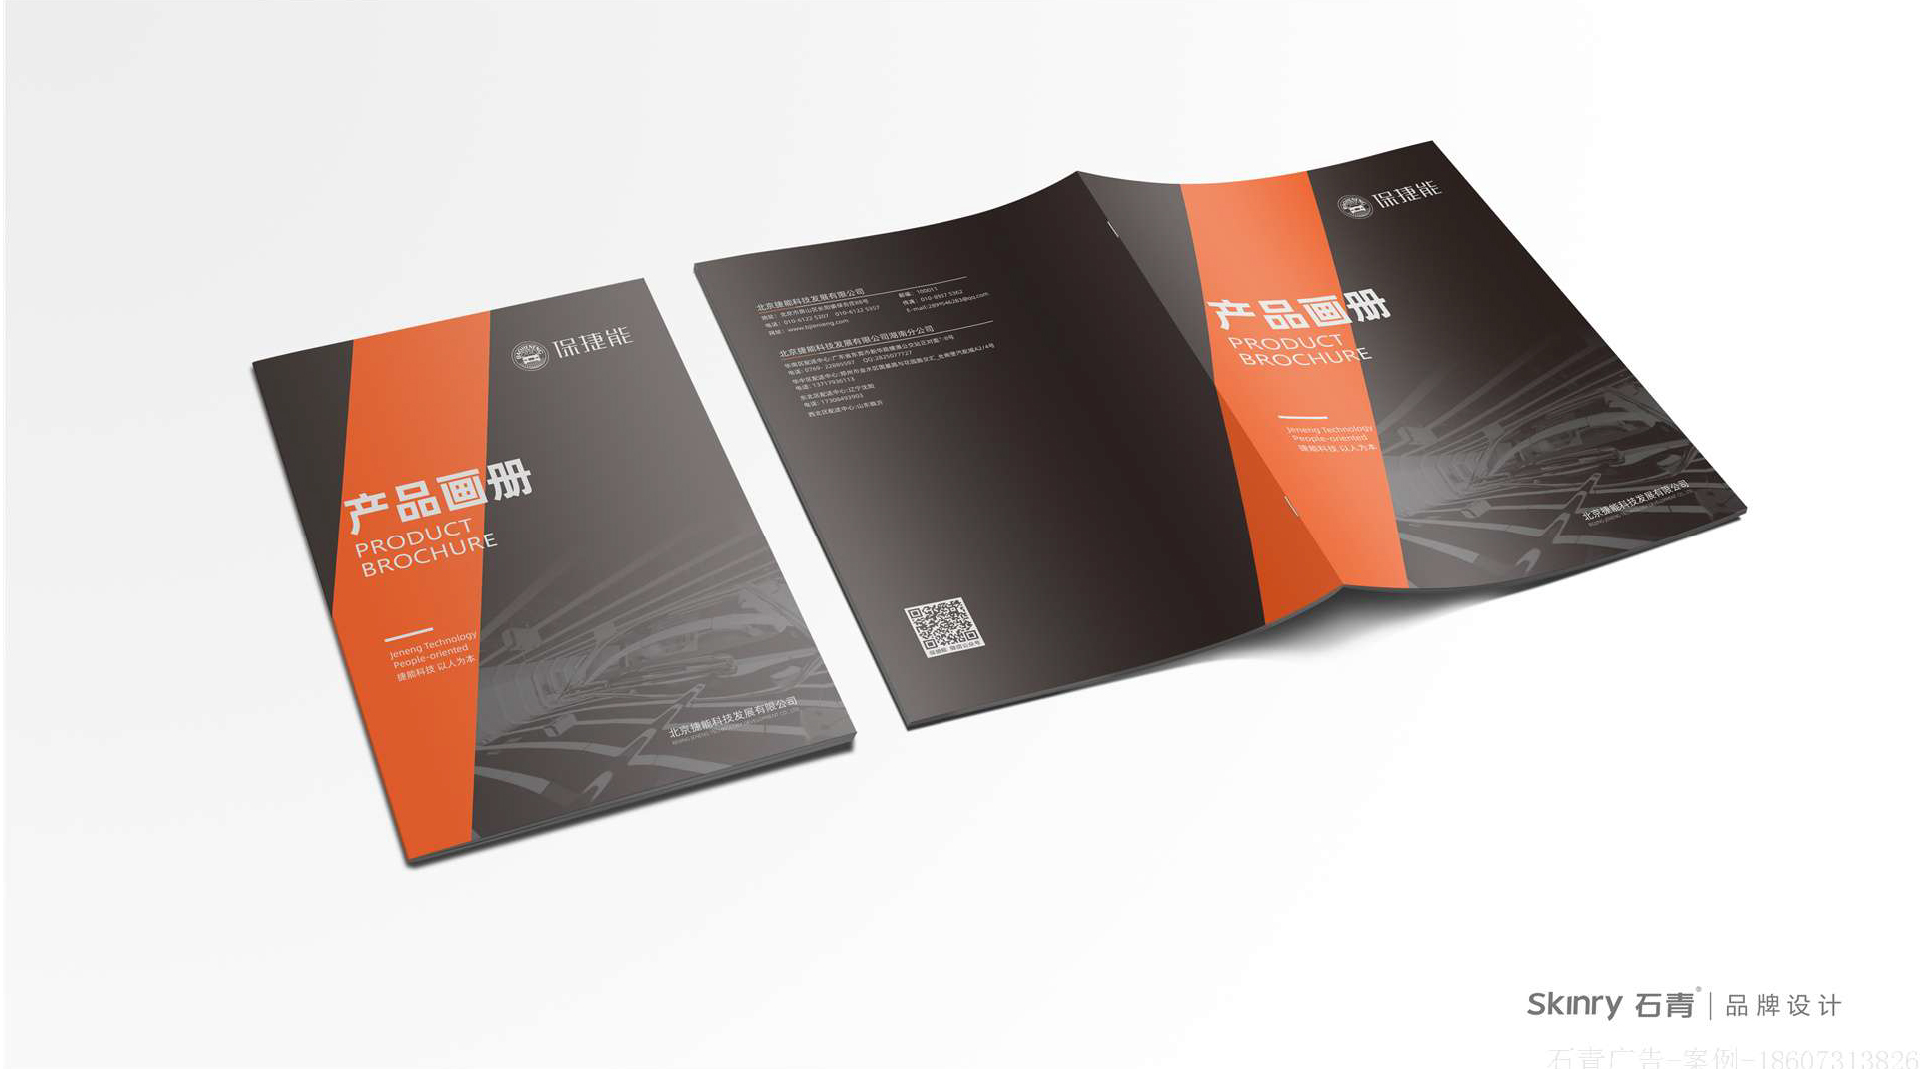 保捷能科技产品画册设计 环保产品画册设计制作